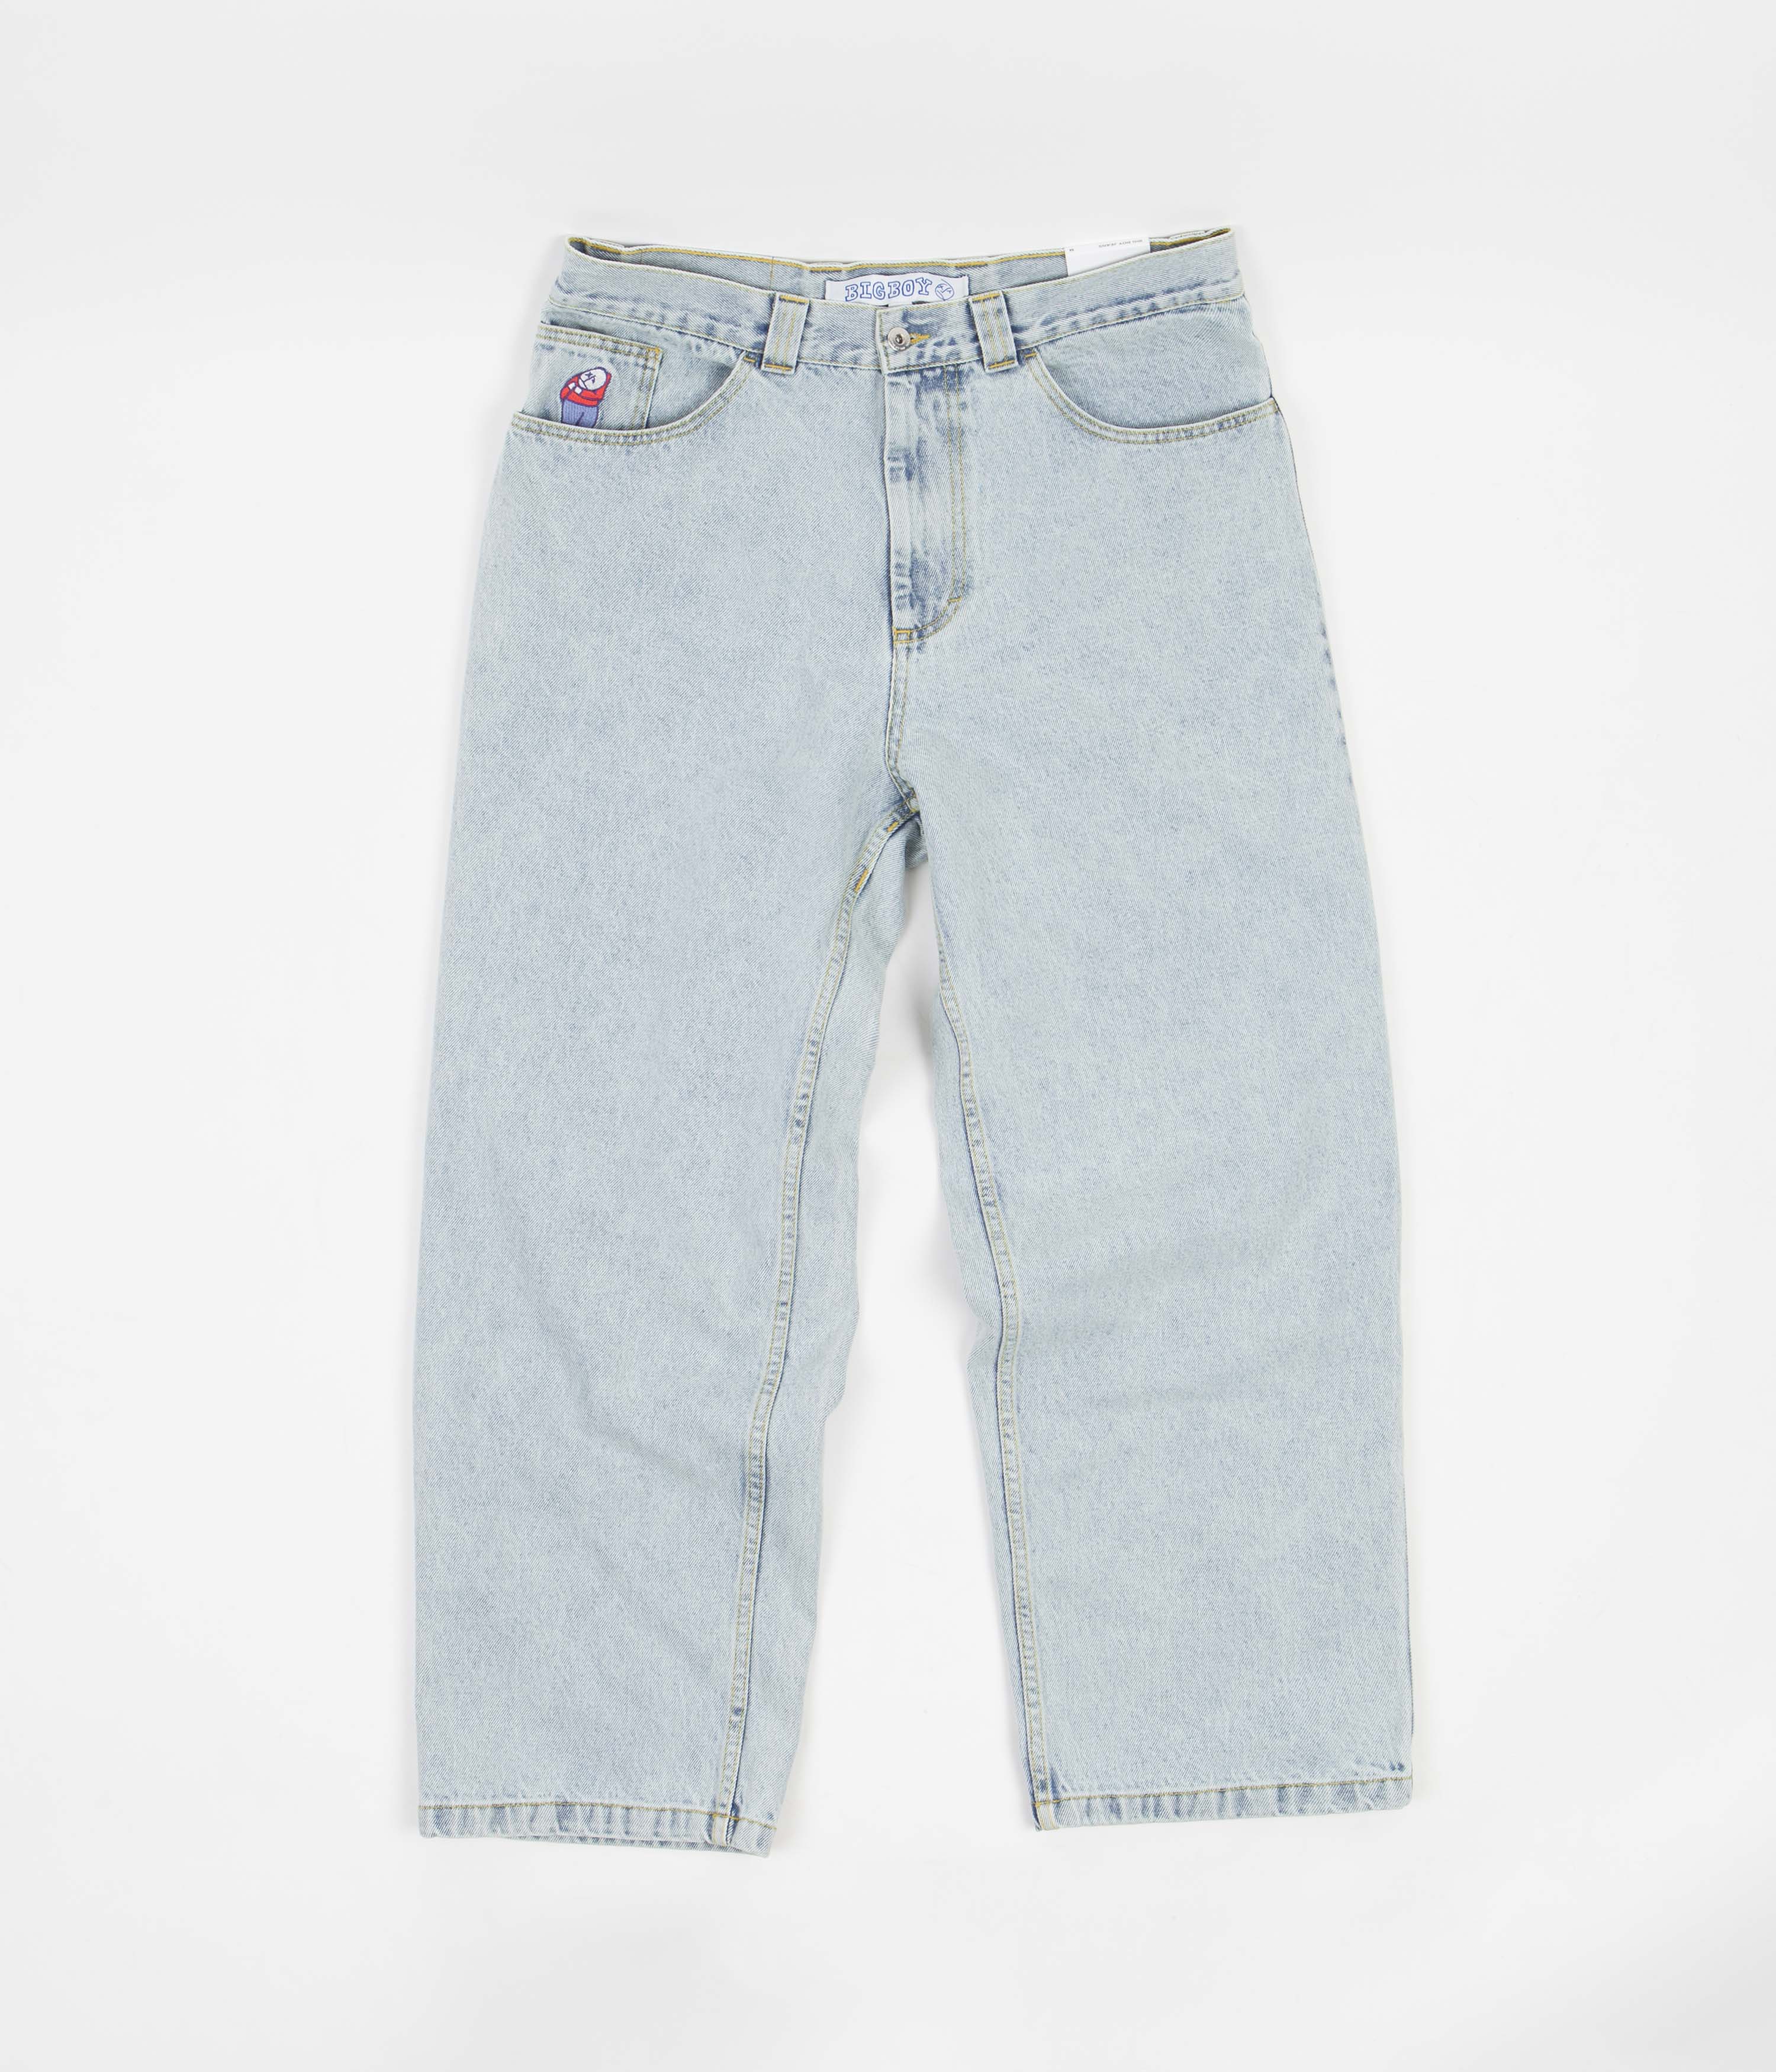 激安ブランド Polar – Boy Bigboy Denim Jeans メンズ